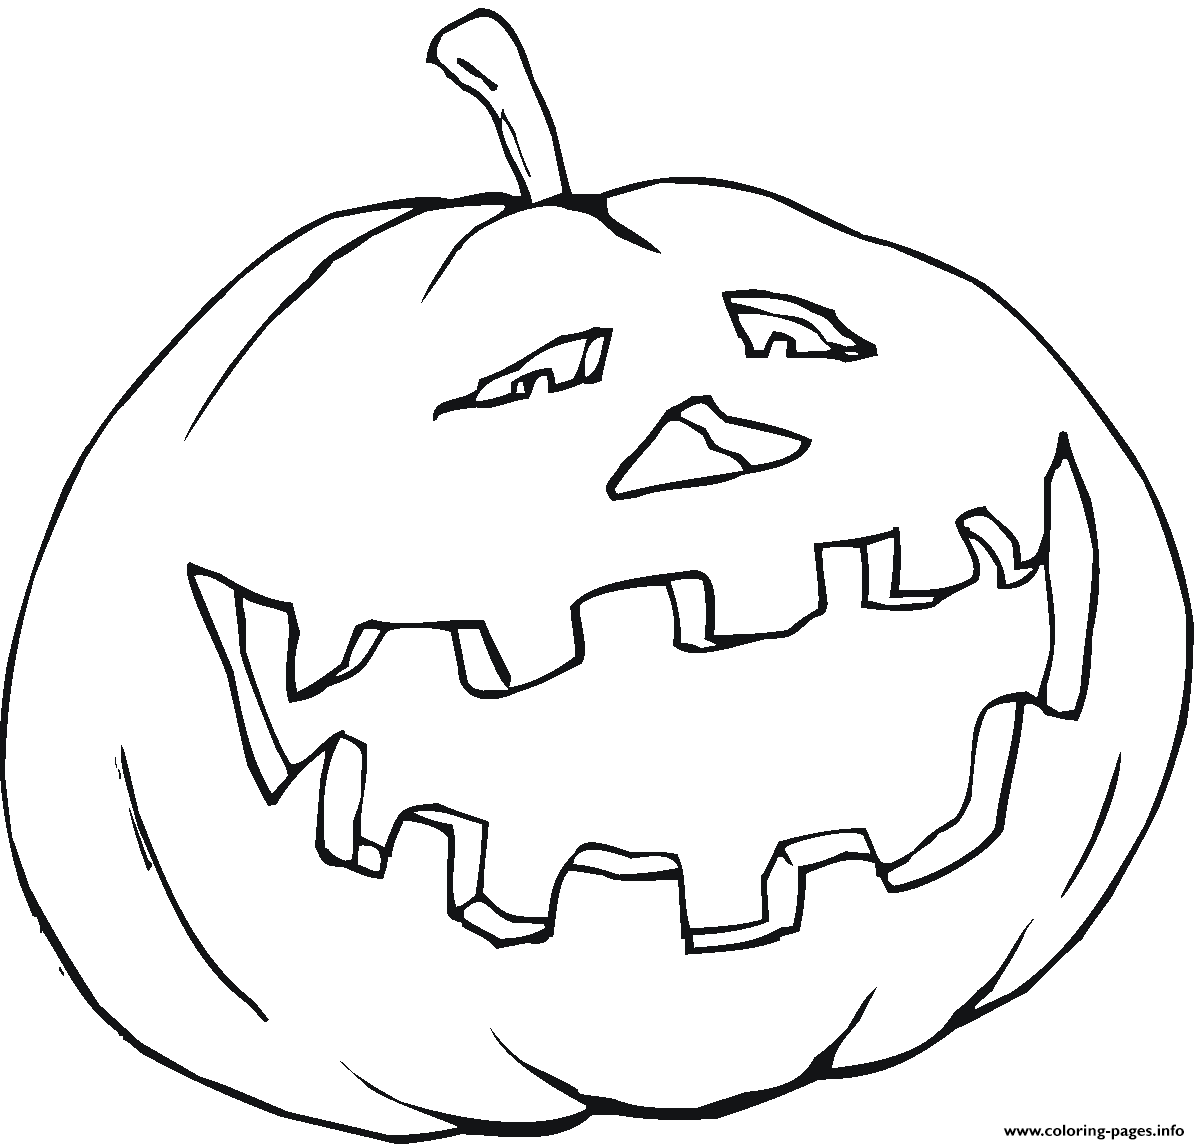 Scary Halloween Pumpkin S Preschoolers Free4775 coloring